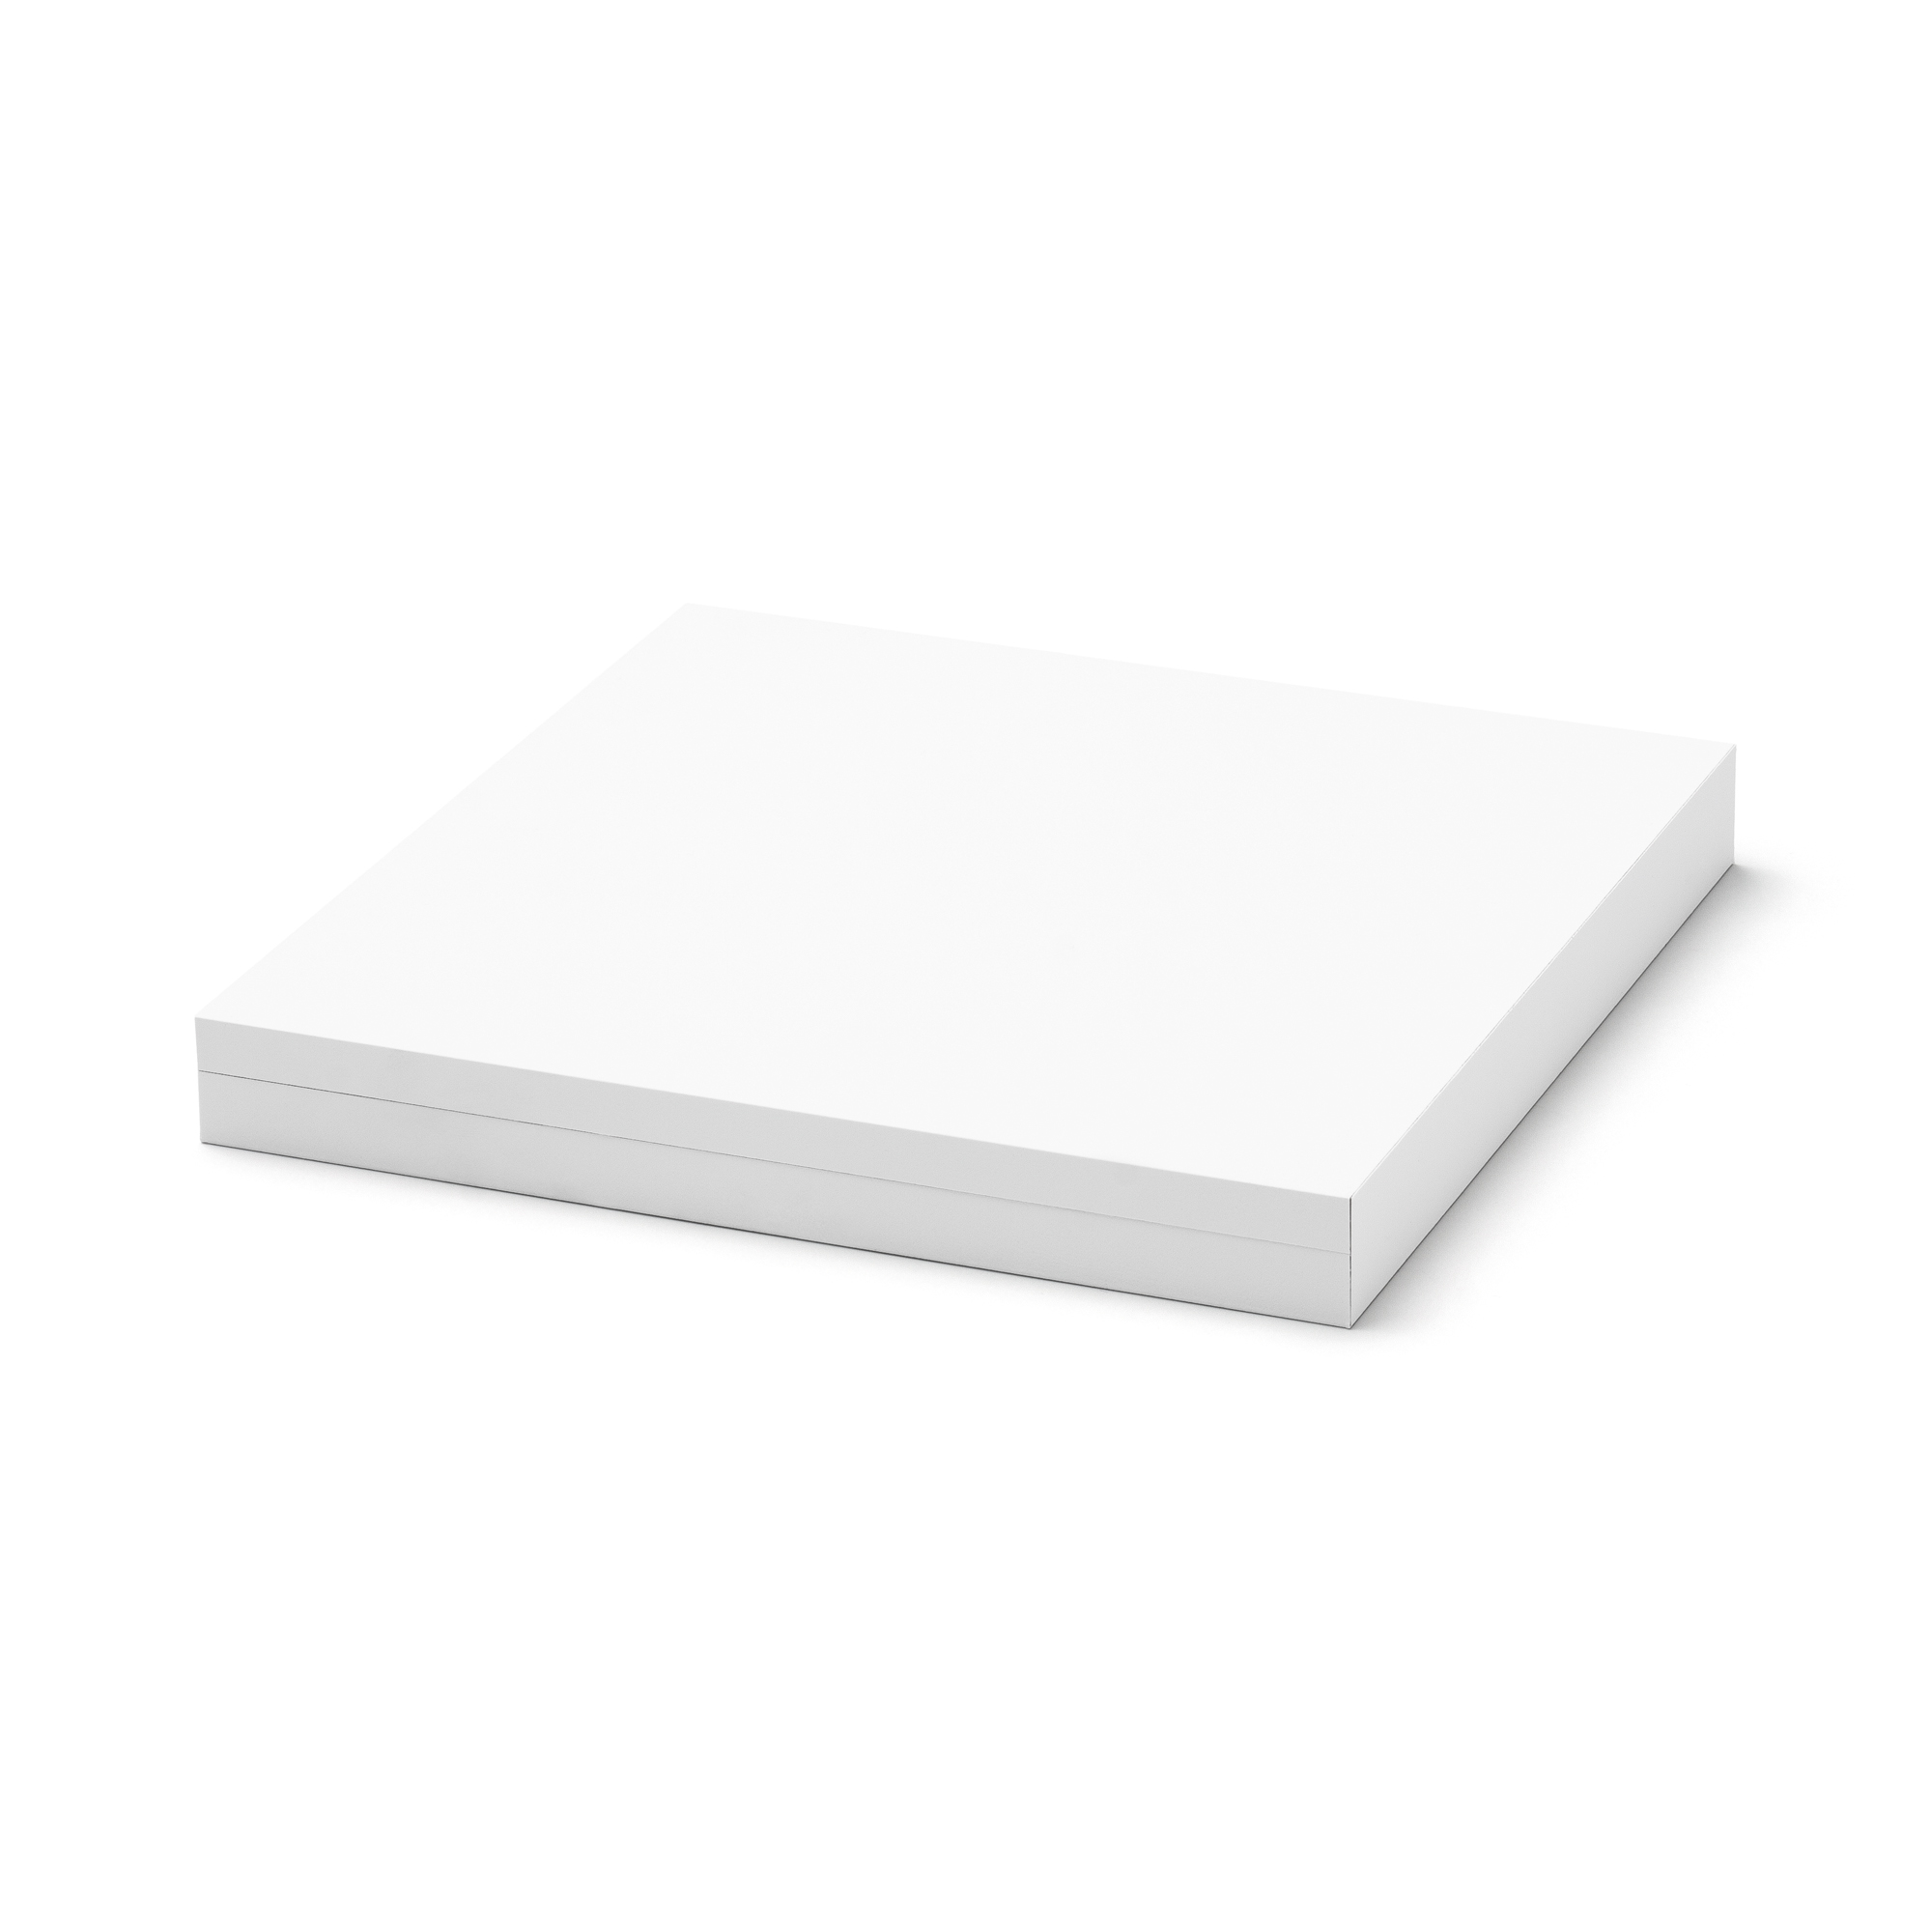 Whitebox Kette flach, 170 x 170 x 18 mm